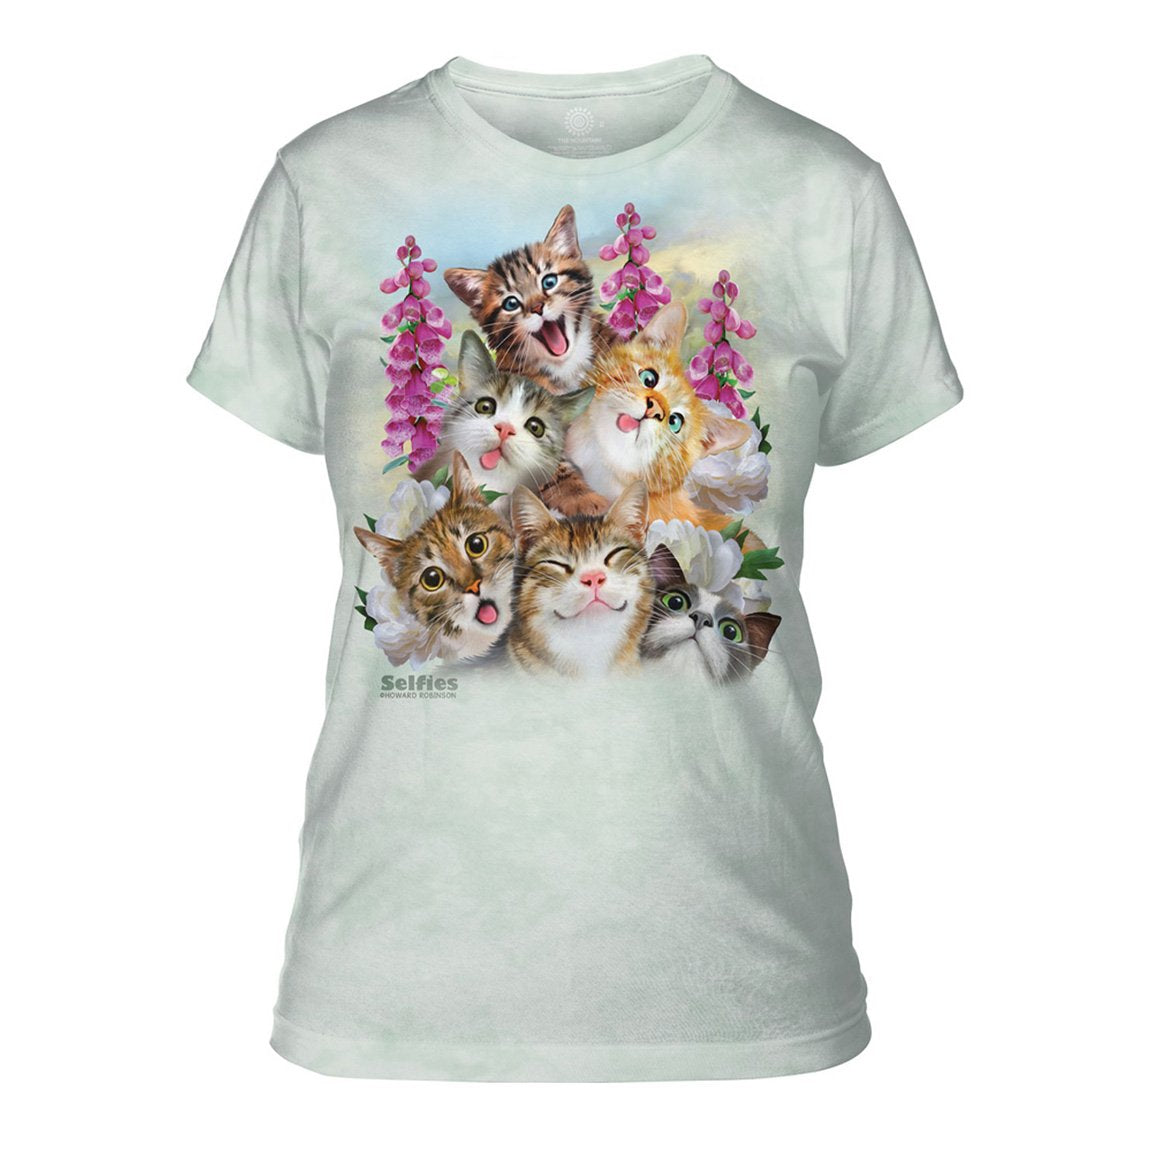 Kittens Selfie Women's Short Sleeve Shirt The Mountain